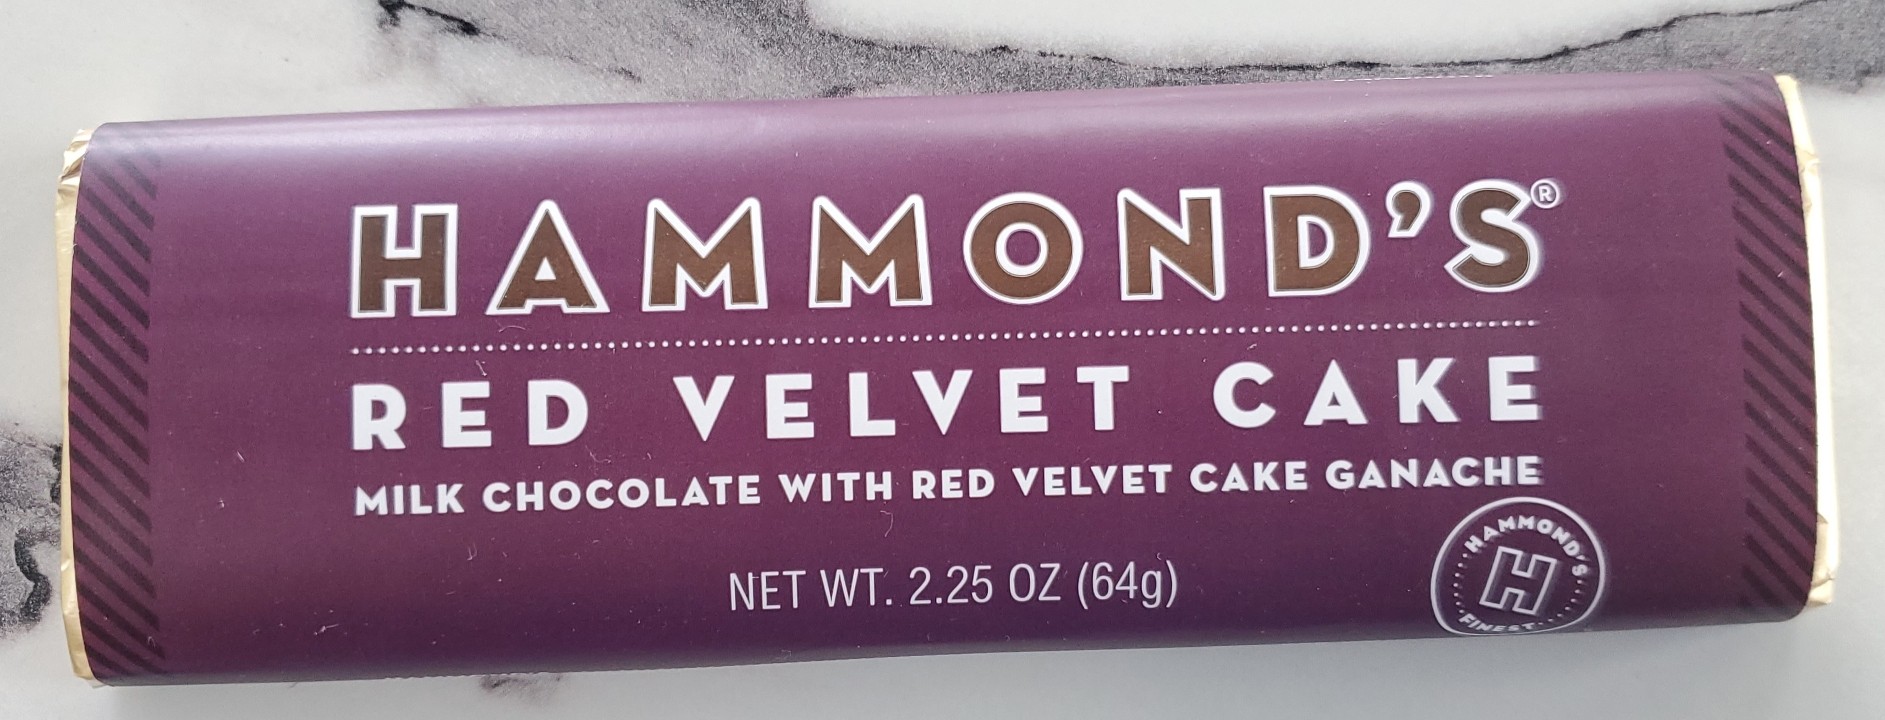 Hammond's Red Velvet Cake